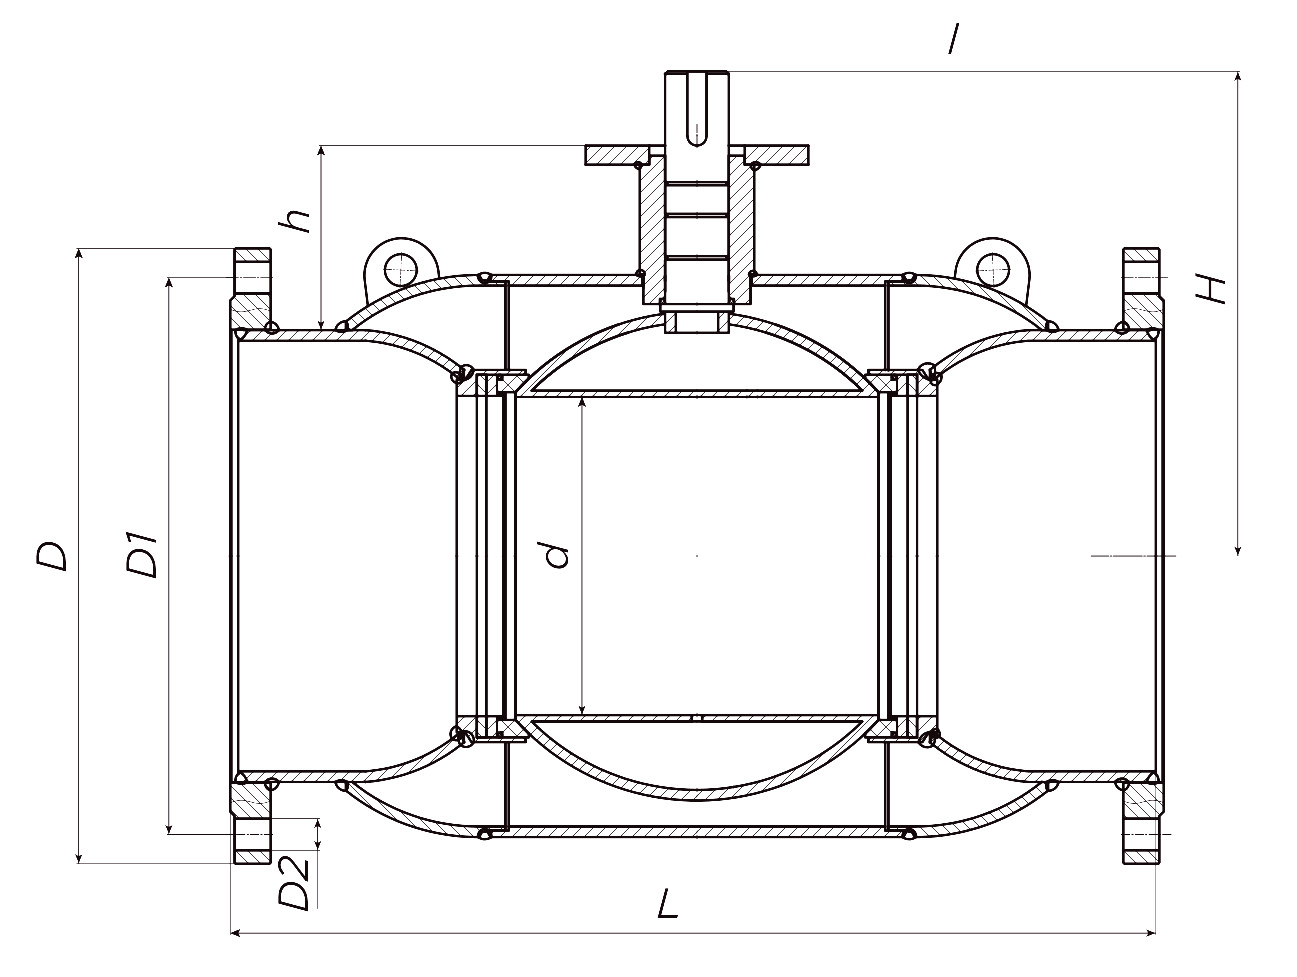 Кран шаровой ALSO КШ.Ф.400.16-01 Ду400 Ру16 стандартнопроходной, присоединение - фланцевое, корпус - сталь 20, уплотнение - PTFE, управление - редуктор